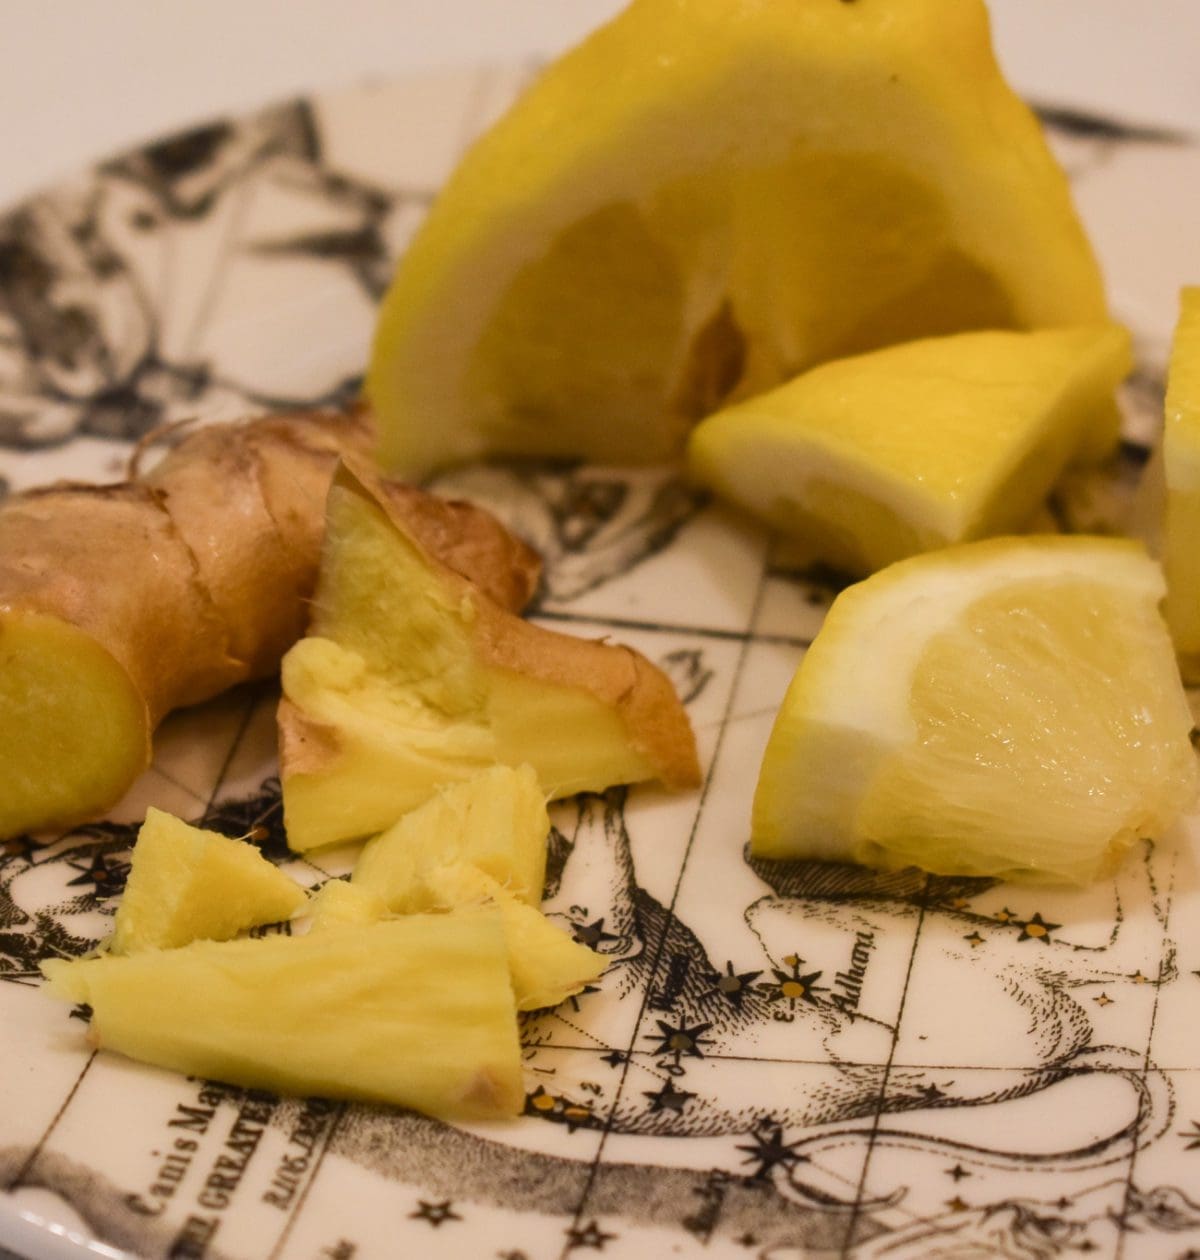 Lemon and Ginger, photo by Christine Csencsitz